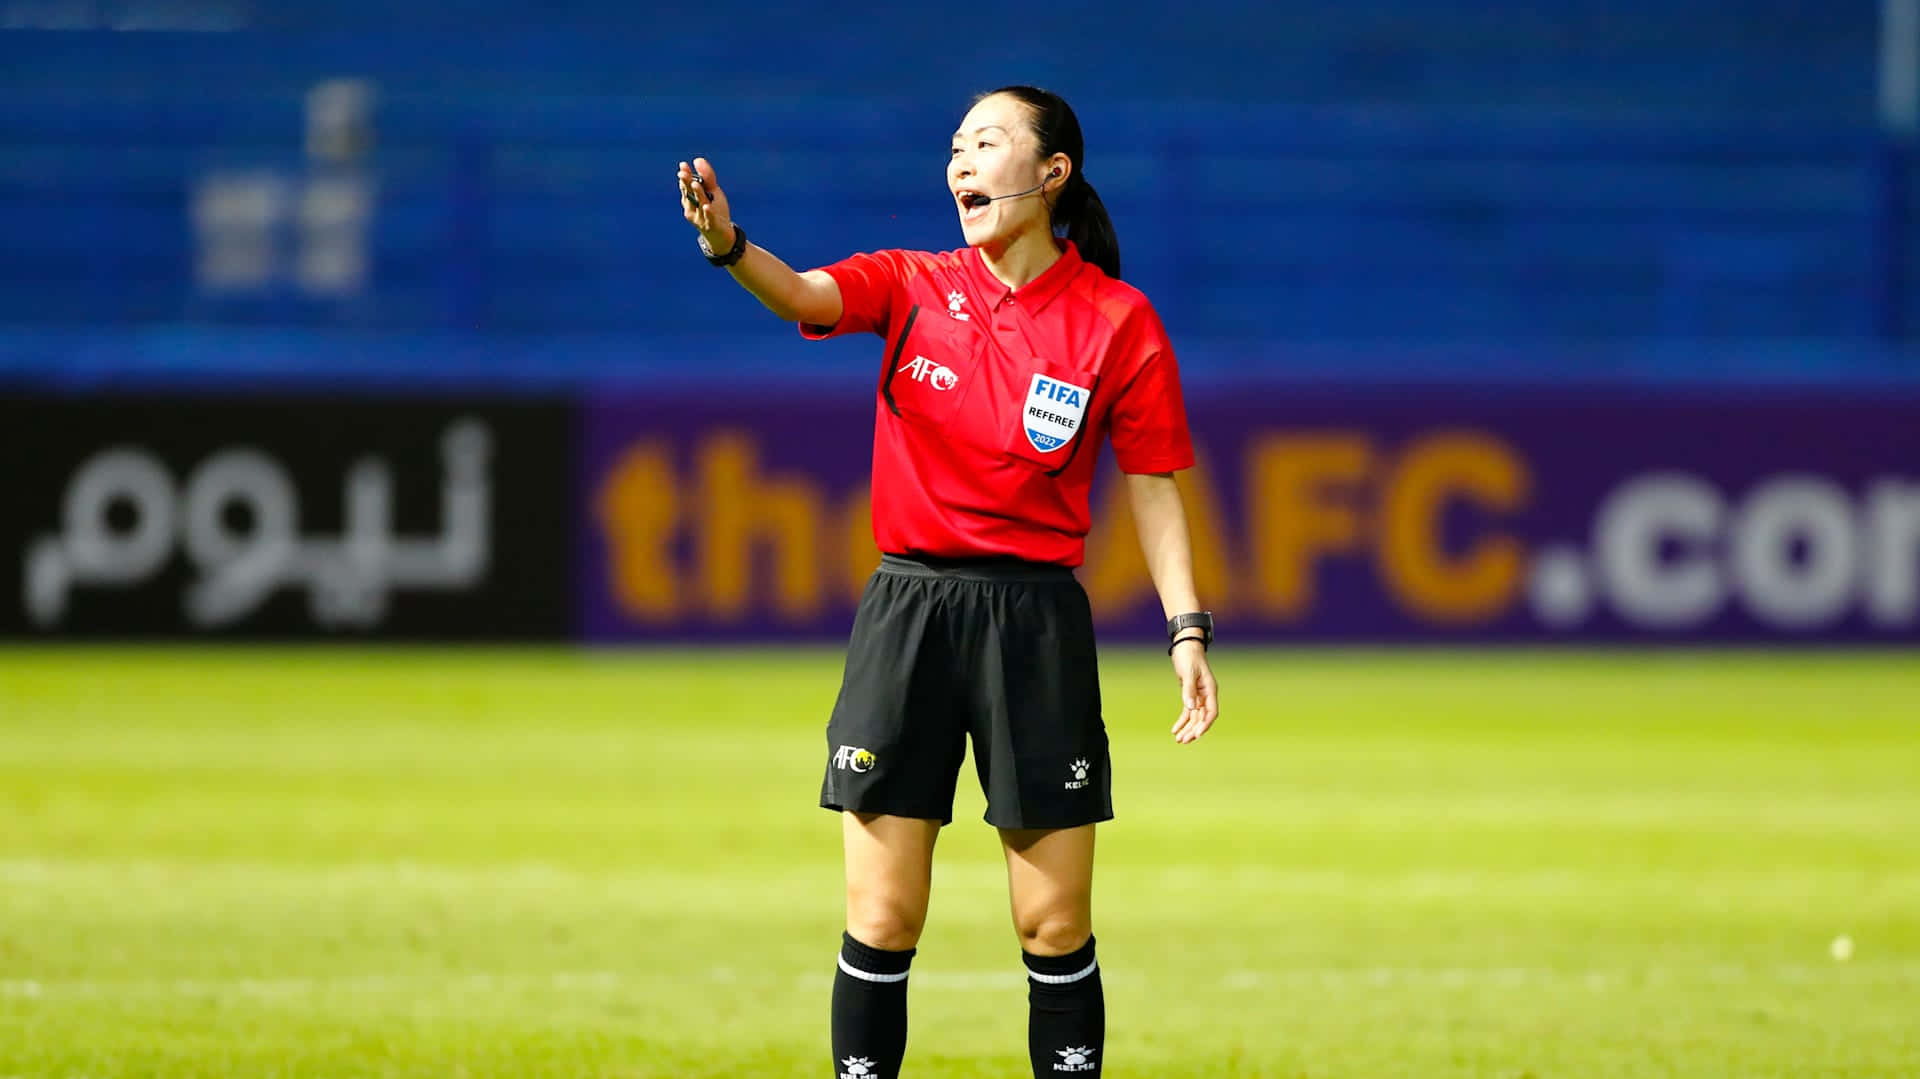 Female Soccer Referee Action Shot.jpg Wallpaper